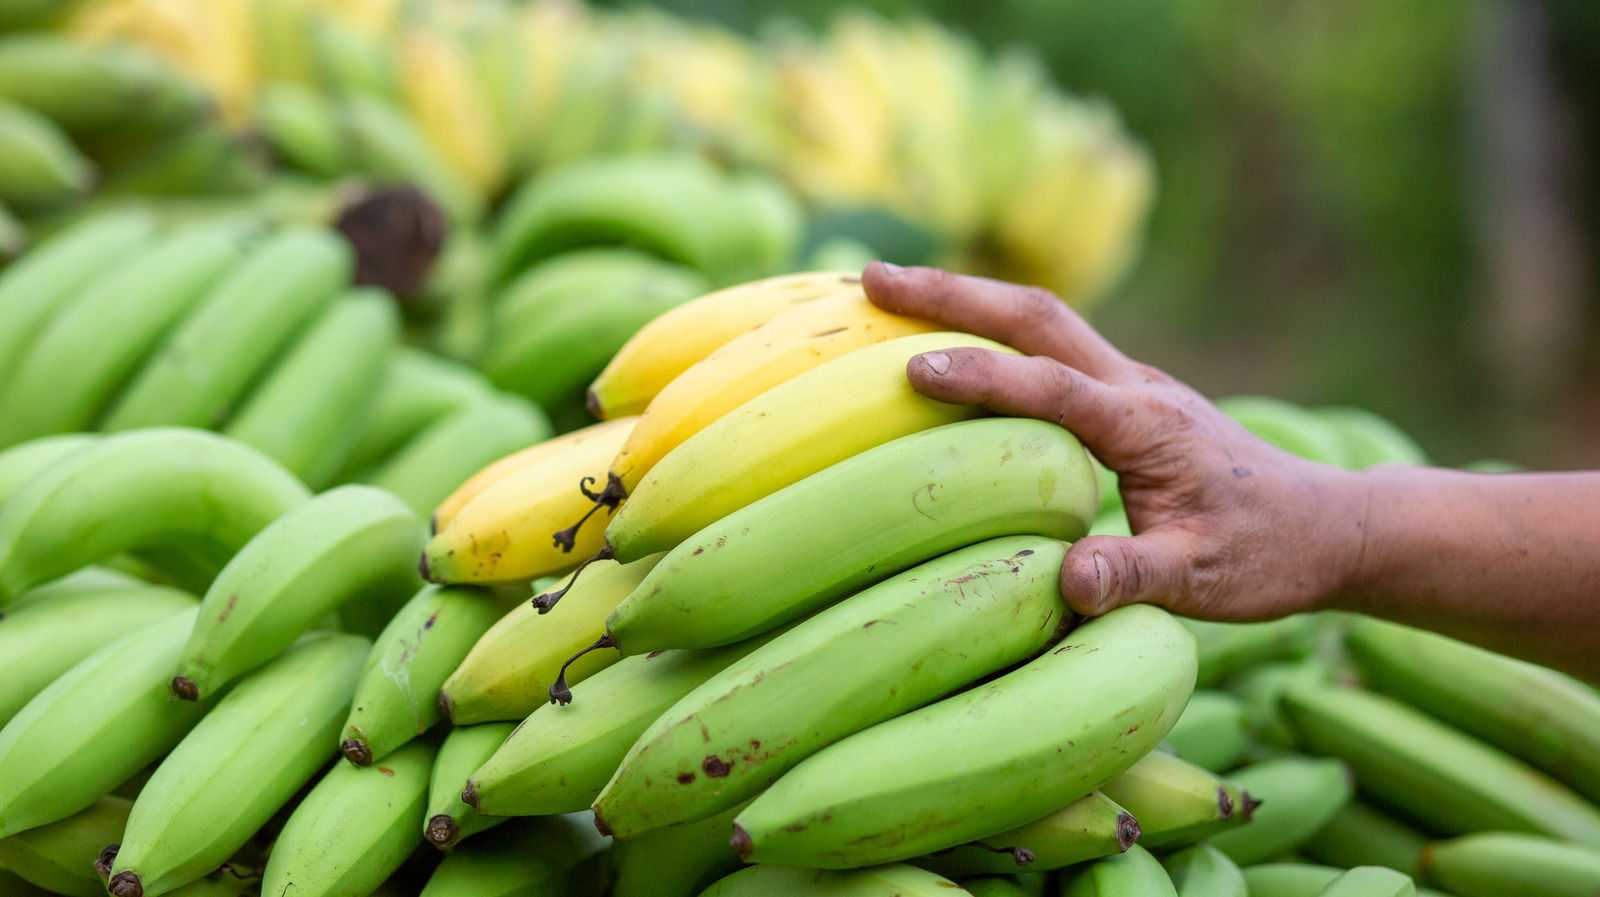 Plantain Vs Banana Taste